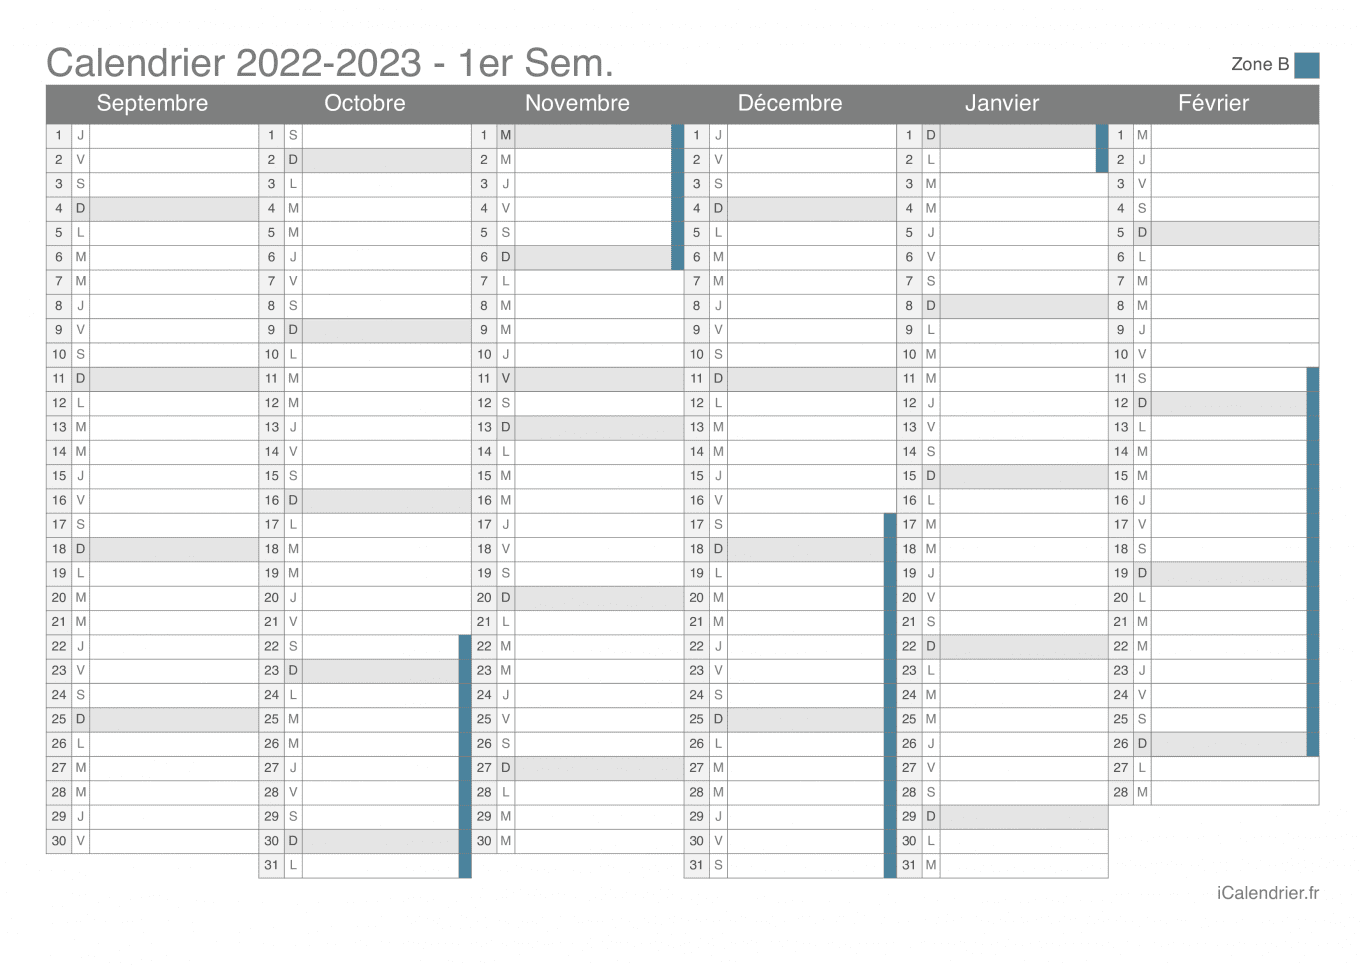 Calendrier des vacances scolaires 2022-2023 par semestre de la zone B